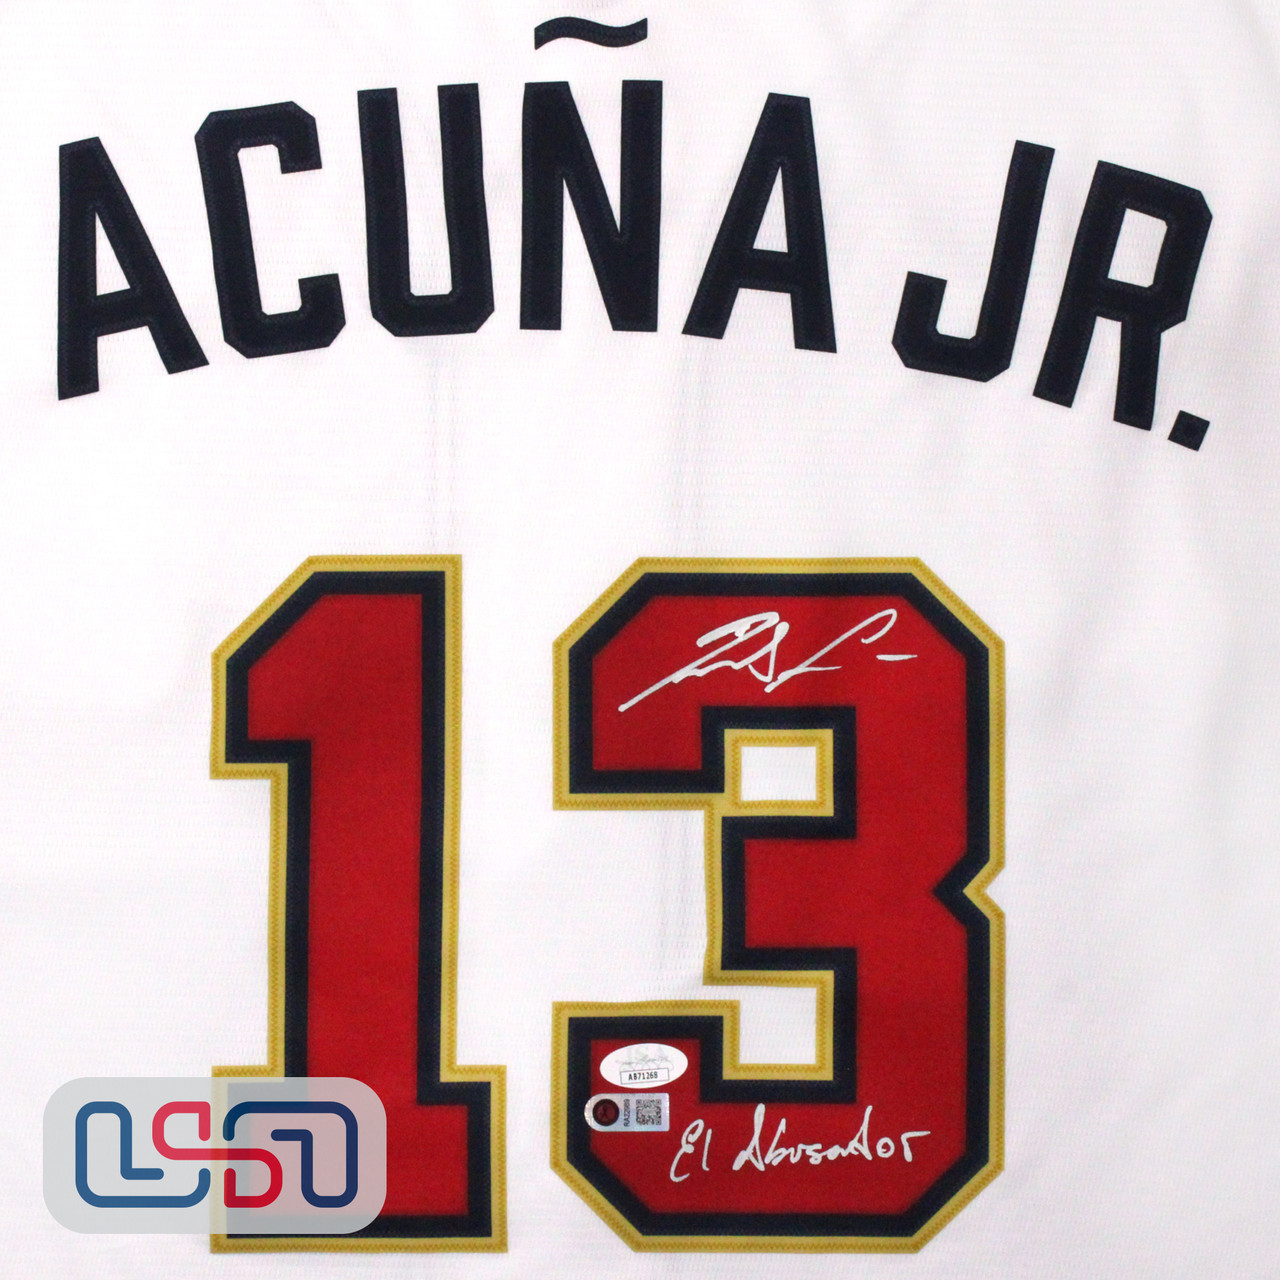 Ronald Acuna Jr. Signed Braves Blue Nike Jersey (JSA COA) – GSSM